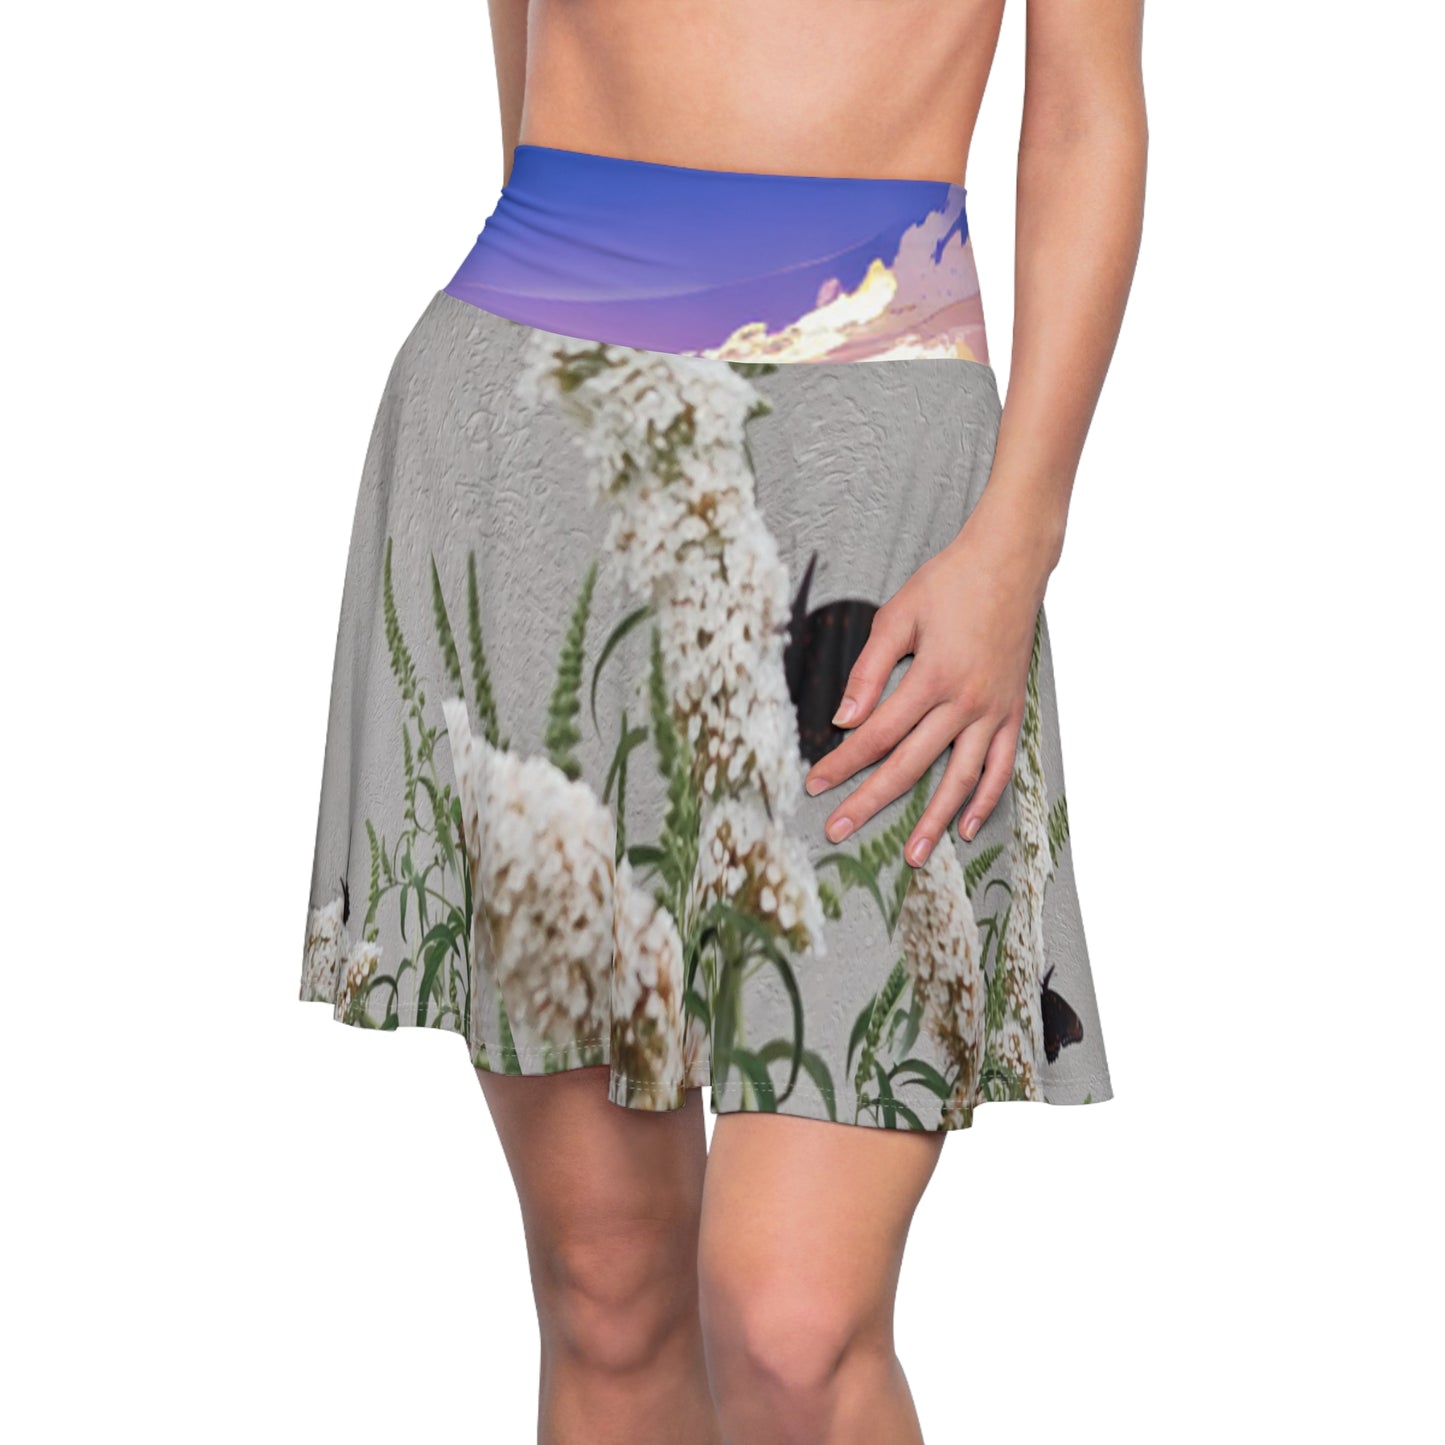 Spiritual-themed Skater Skirt for women